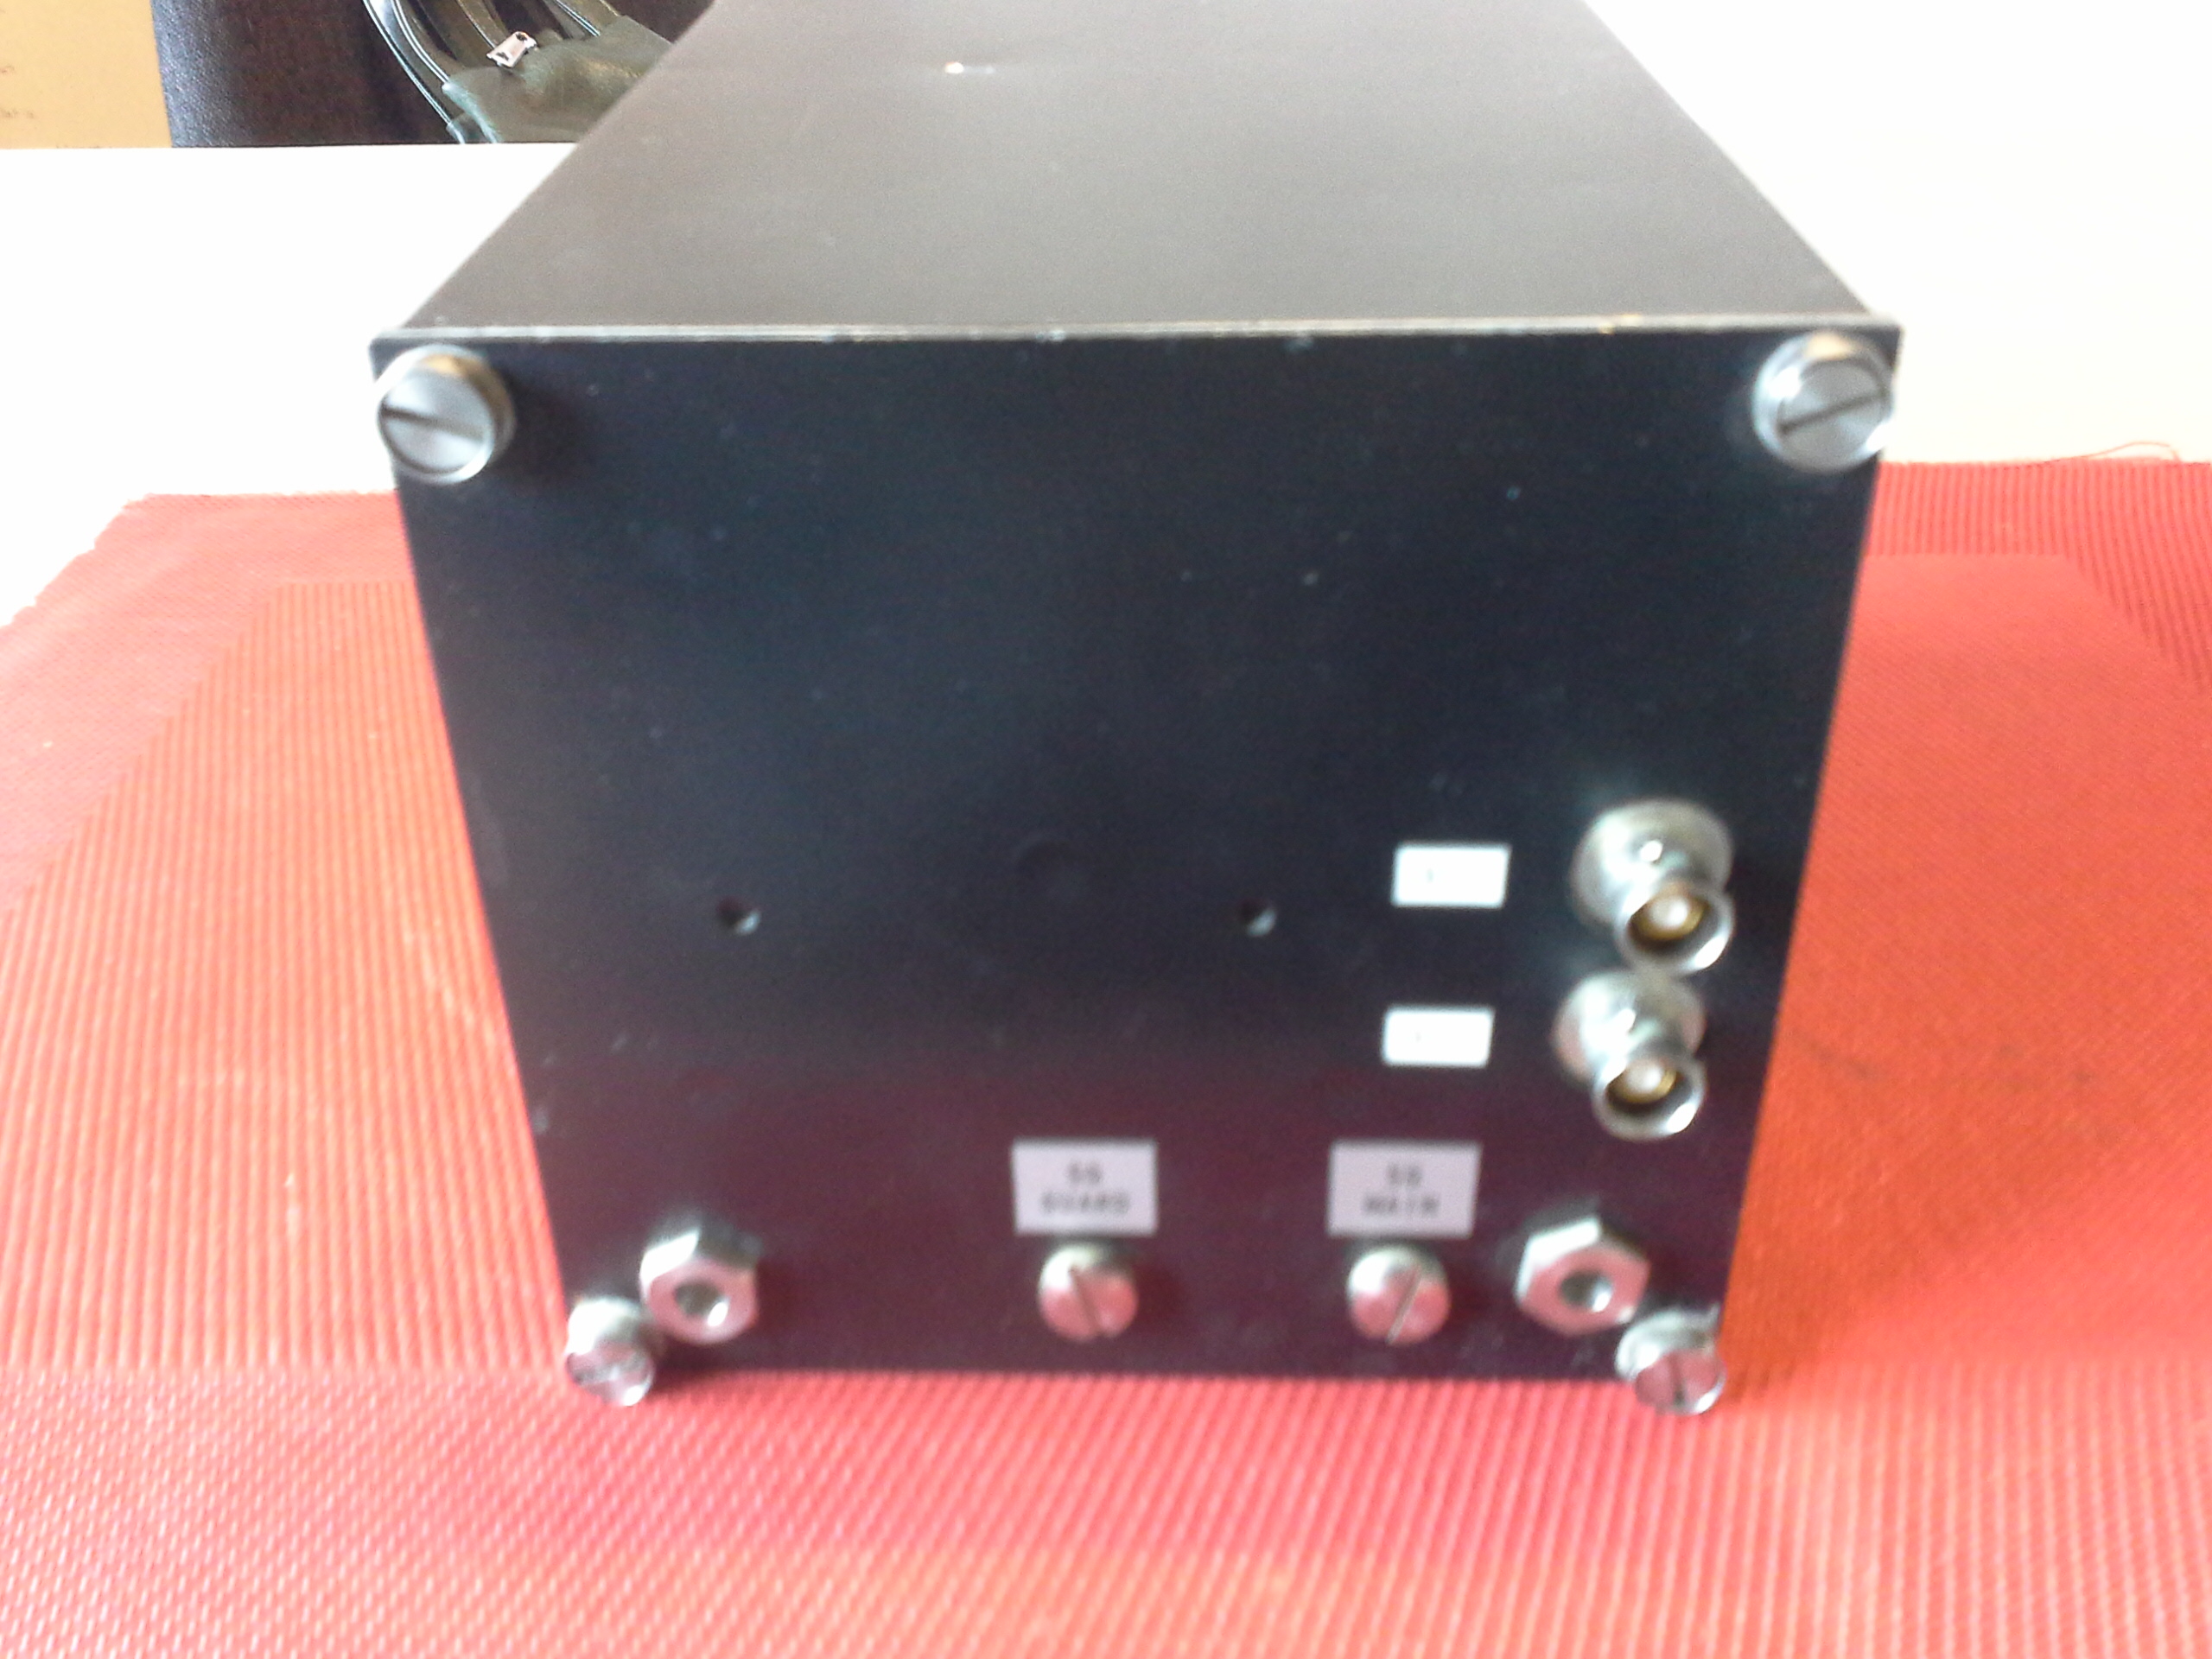 Rohde & Schwarz UHF-Transceiver XD 611P1, gehört zu Rohde & Schwarz Sende/ Empfangsanlage XD 611S2 UHF